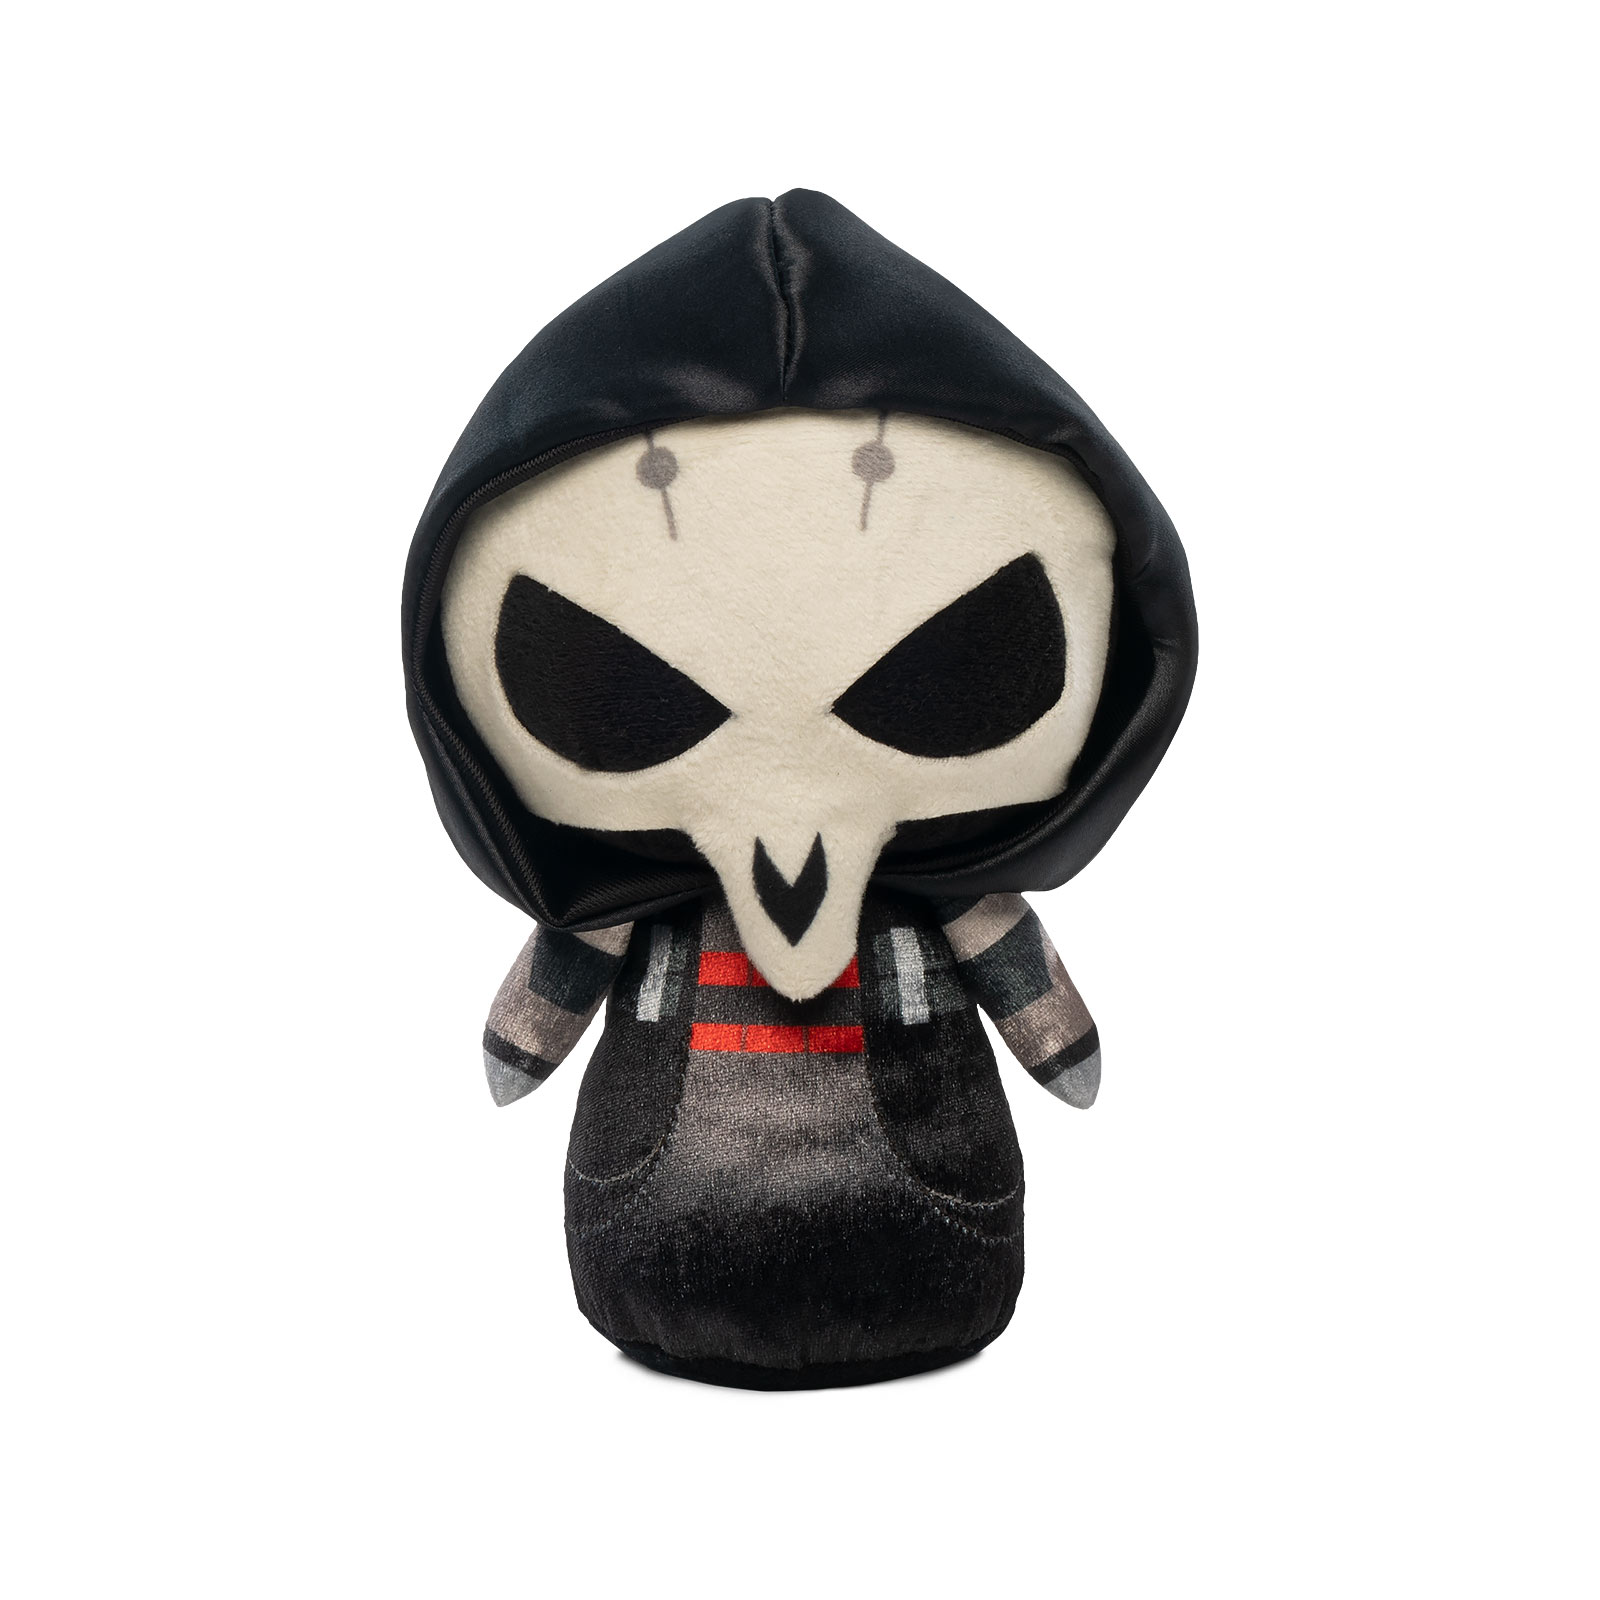 Overwatch - Reaper Funko Supercute Plush Figure 21 cm